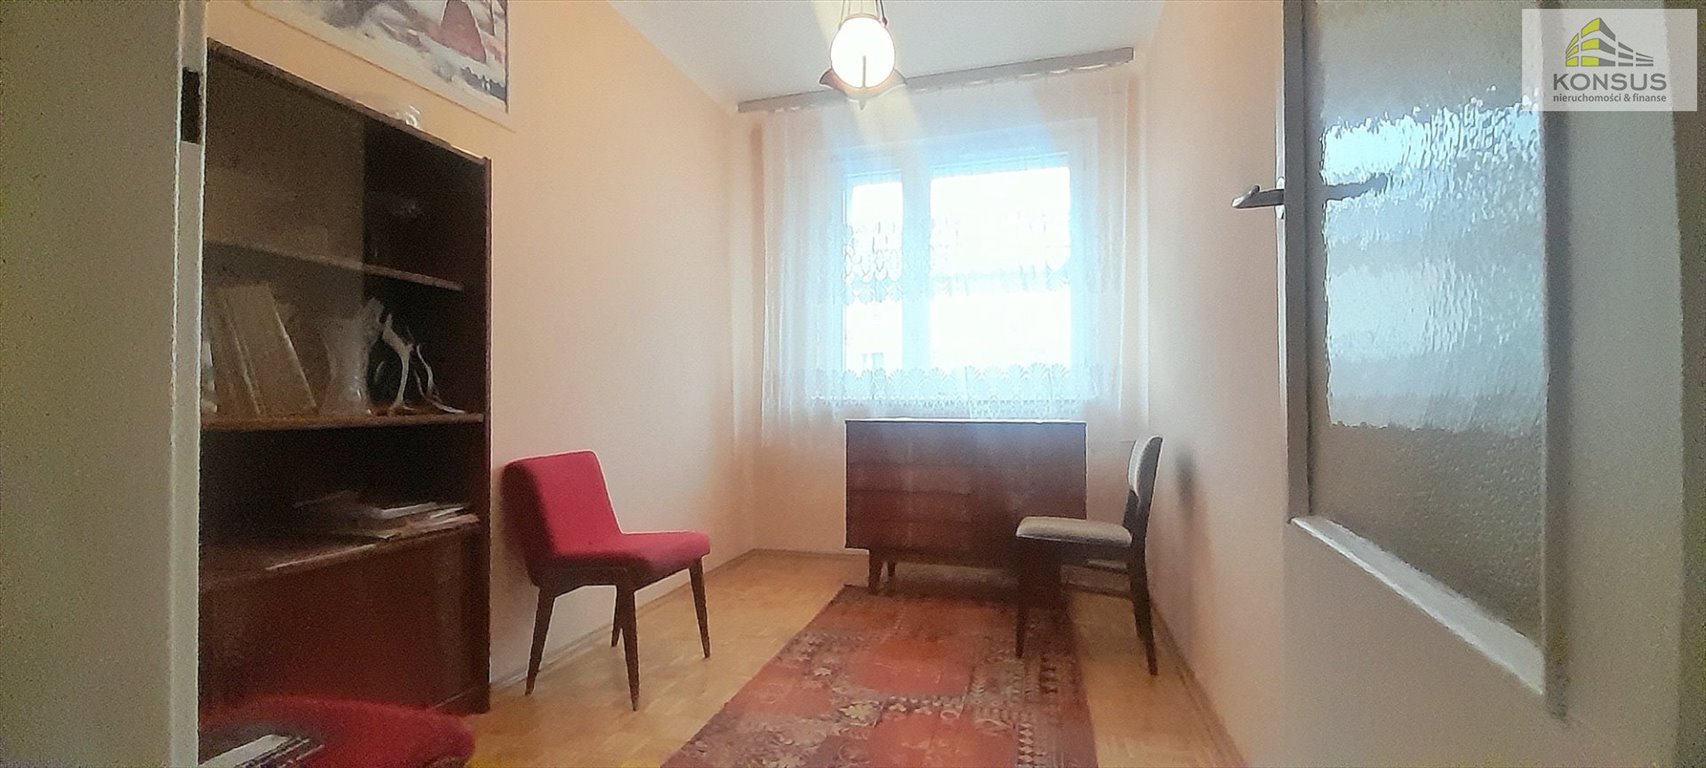 Mieszkanie trzypokojowe na sprzedaż Kielce, KSM, Mazurska  46m2 Foto 6